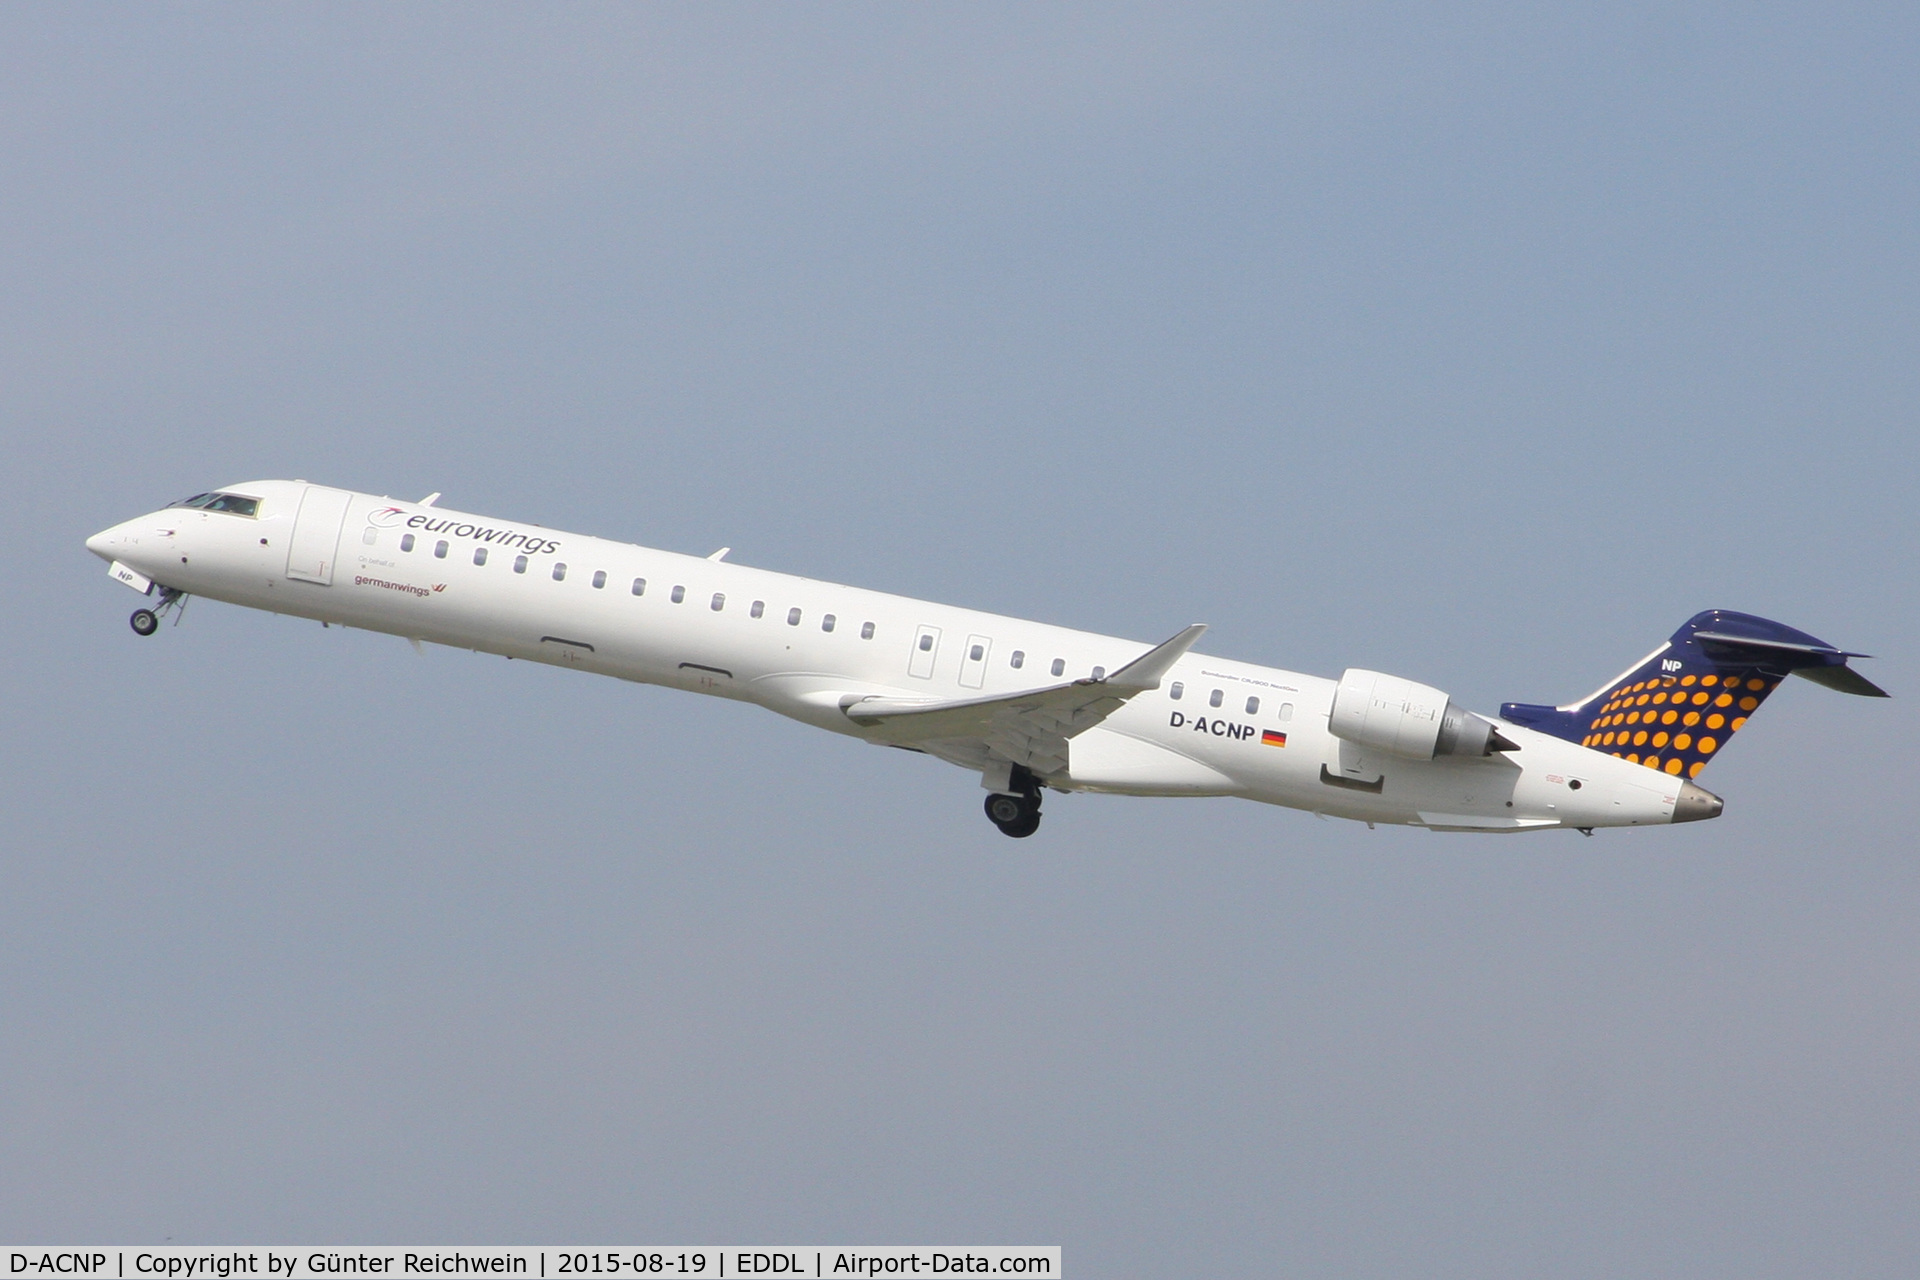 D-ACNP, 2010 Bombardier CRJ-900LR (CL-600-2D24) C/N 15259, Just airborne